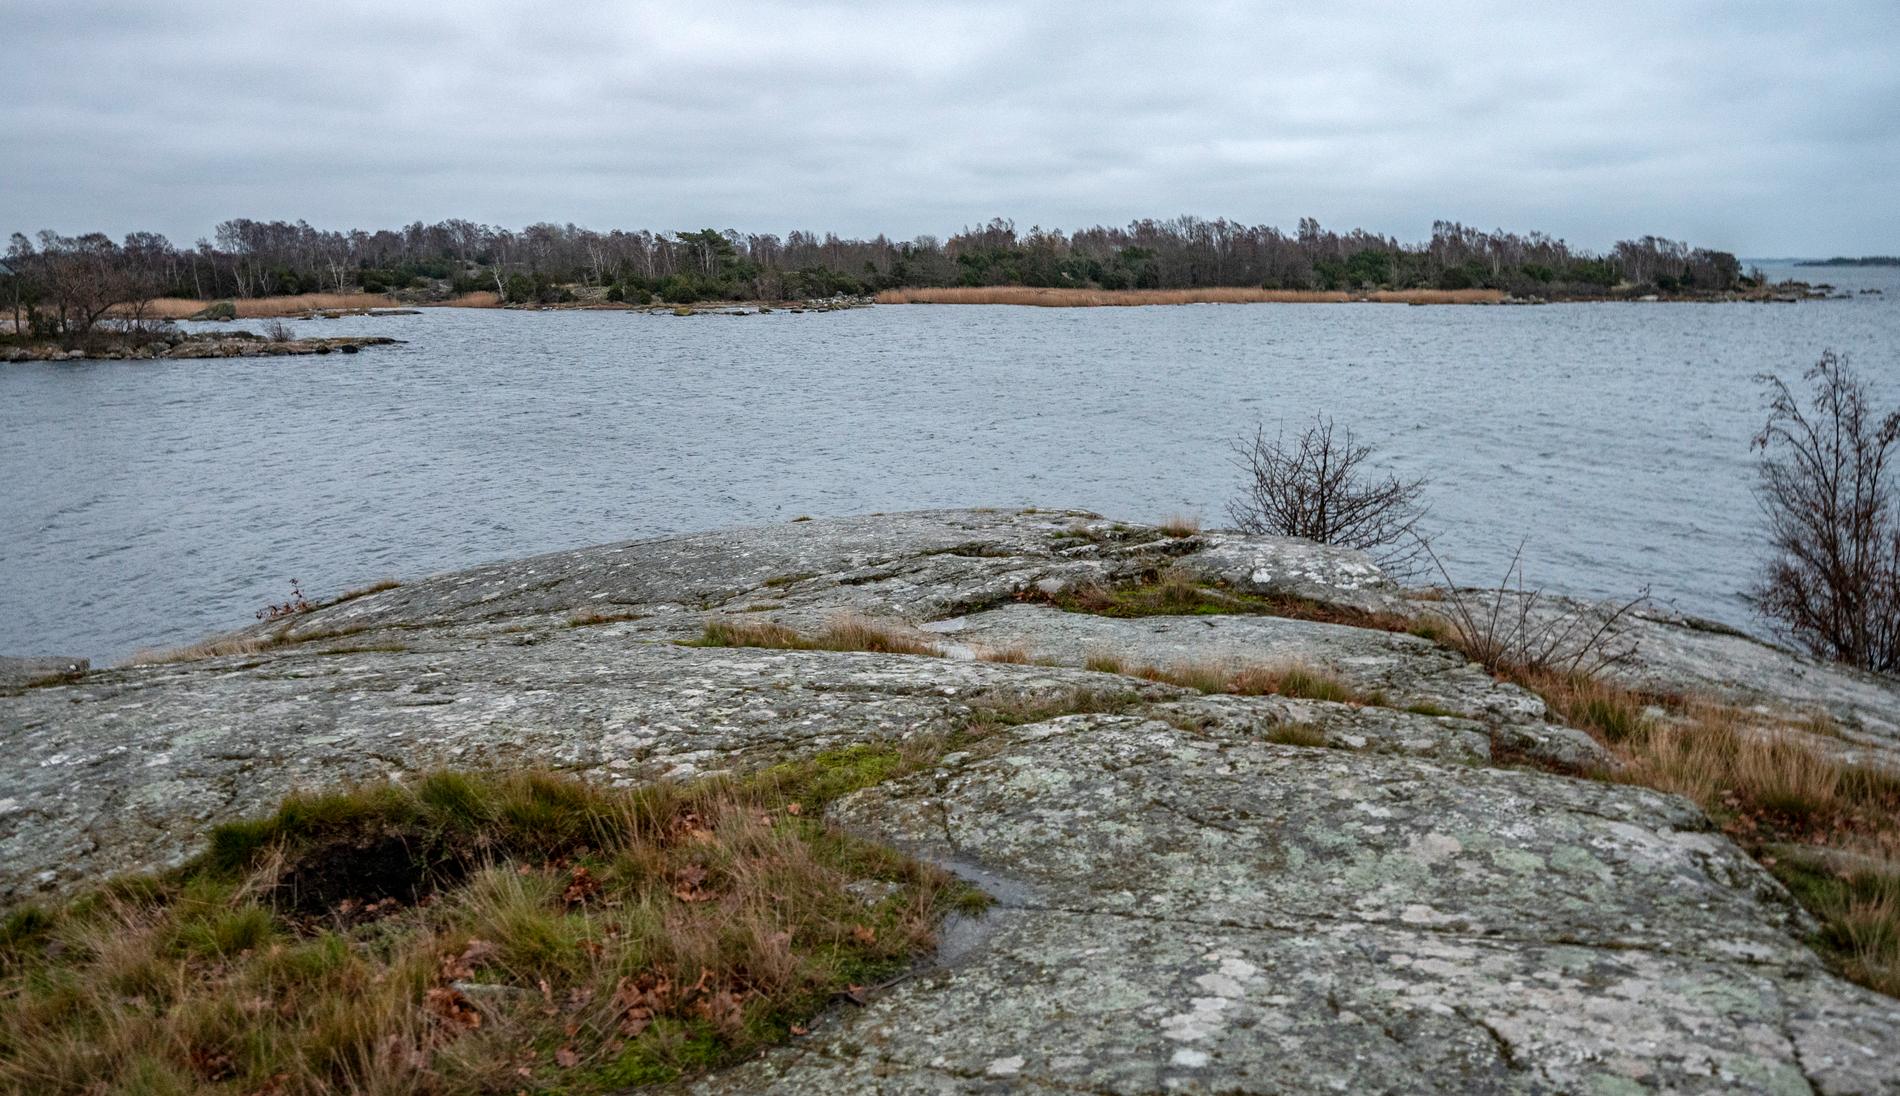 Ön Varö i Karlskrona skärgård sedd från Skillingenäs. Här hittades kvarlevorna av en man som försvann förra sommaren. Arkivbild.